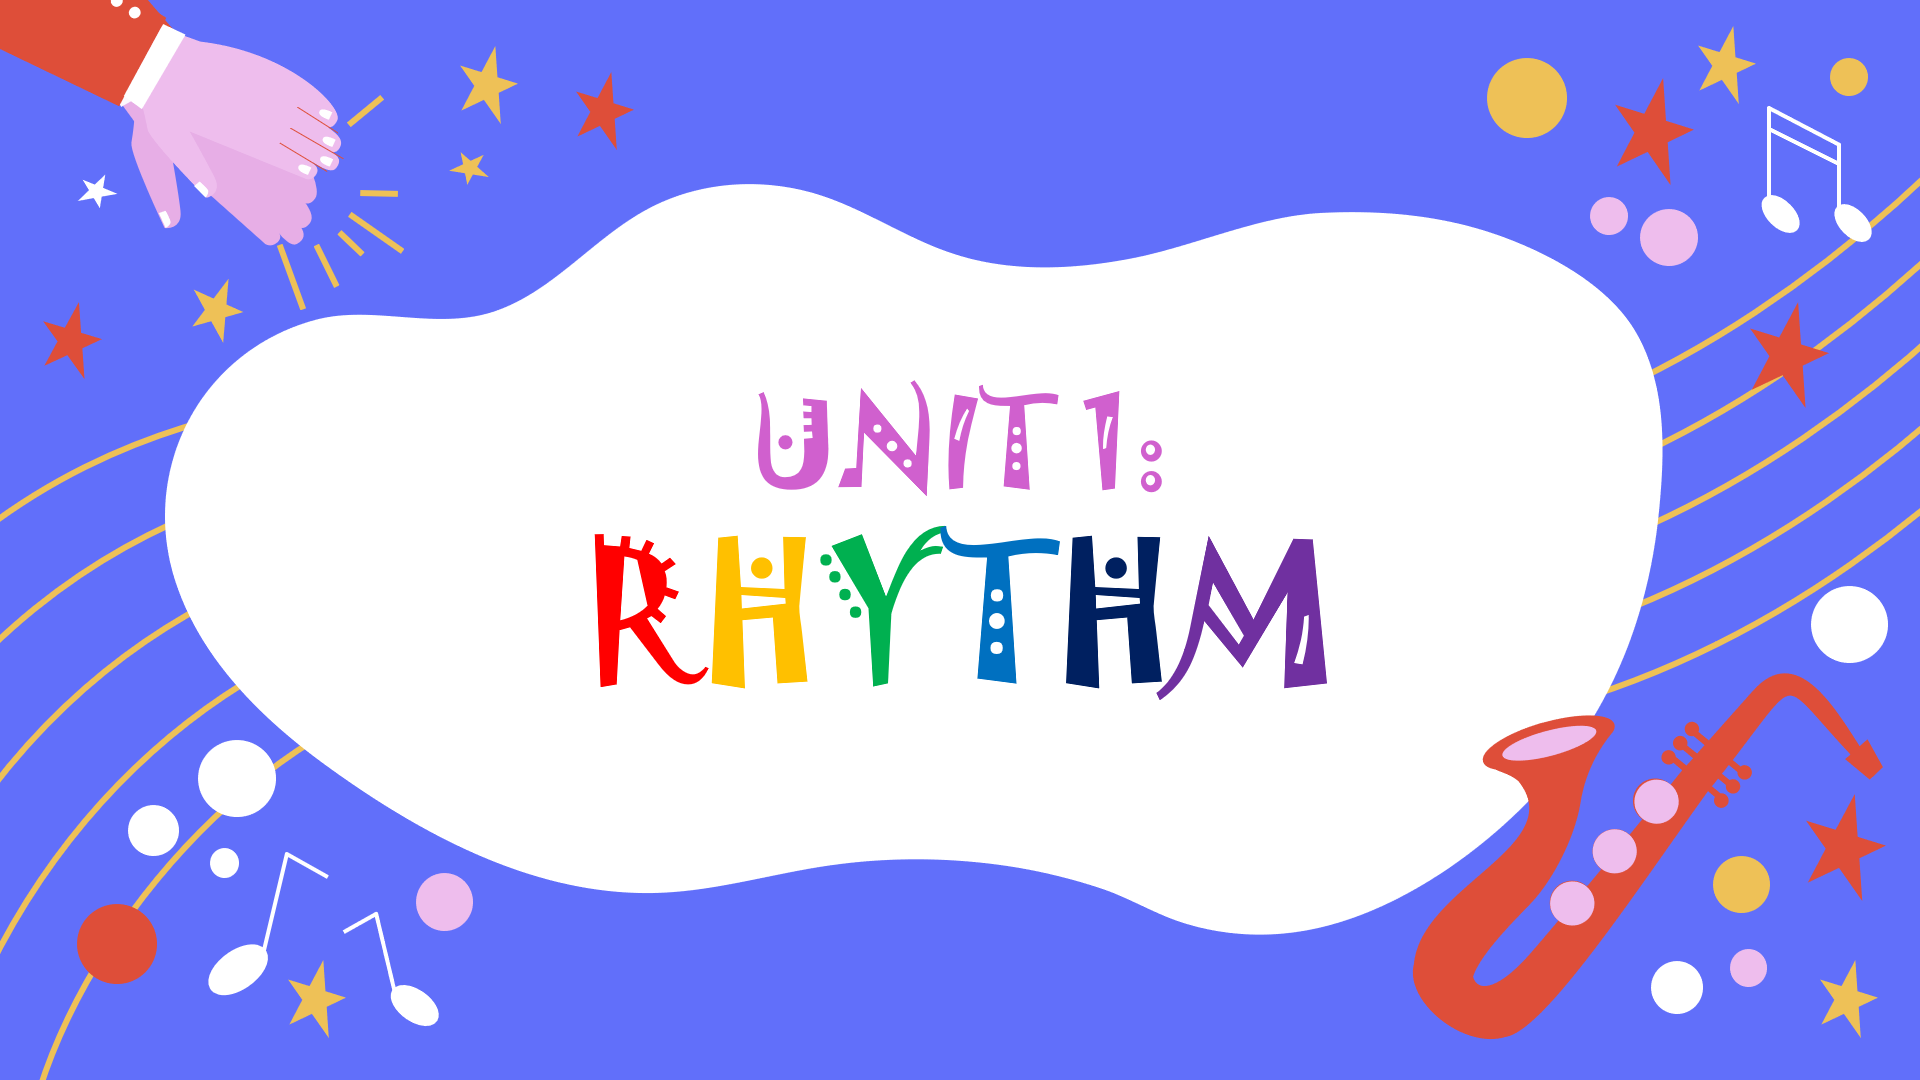 Rhythm - Class 5 - Quizizz